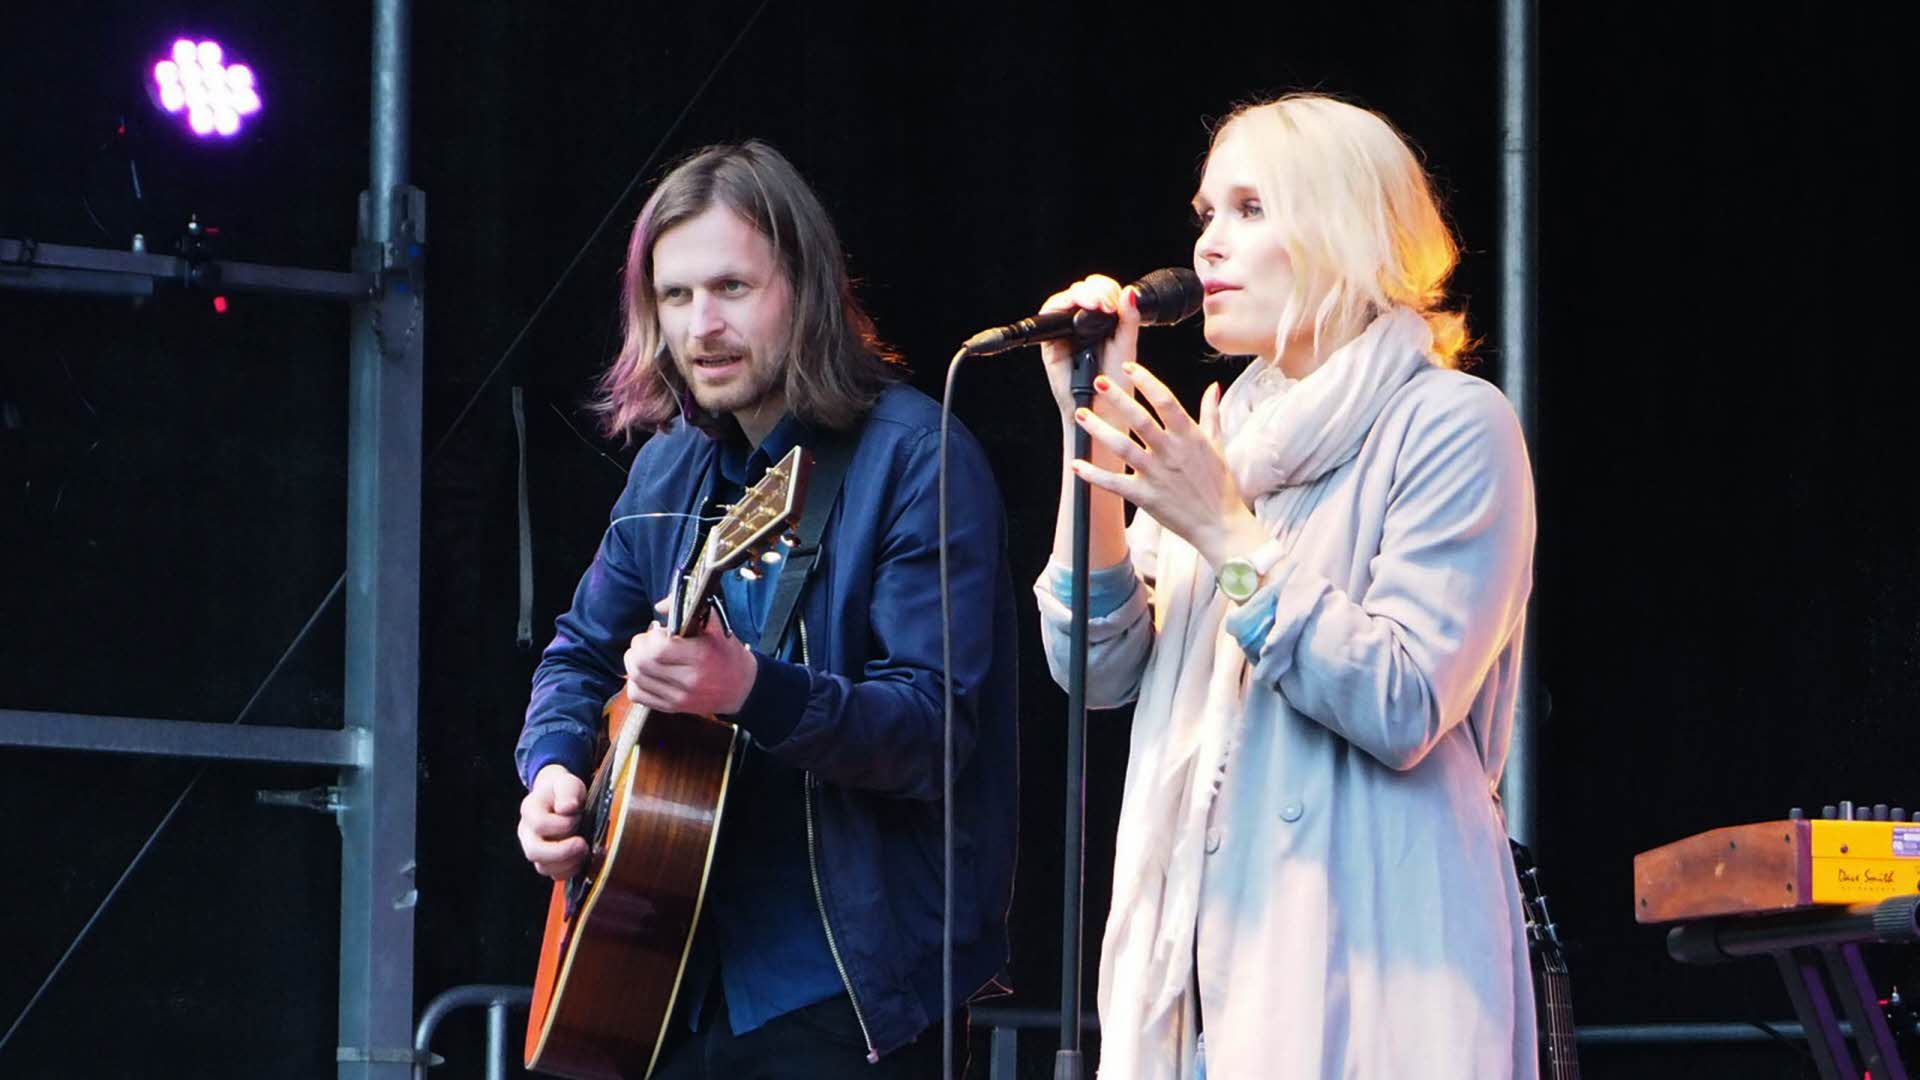 Eine blonde Frau singt in ein Mikrofon und ein Mann mit langen Haaren spielt auf einer Bühne Gitarre.